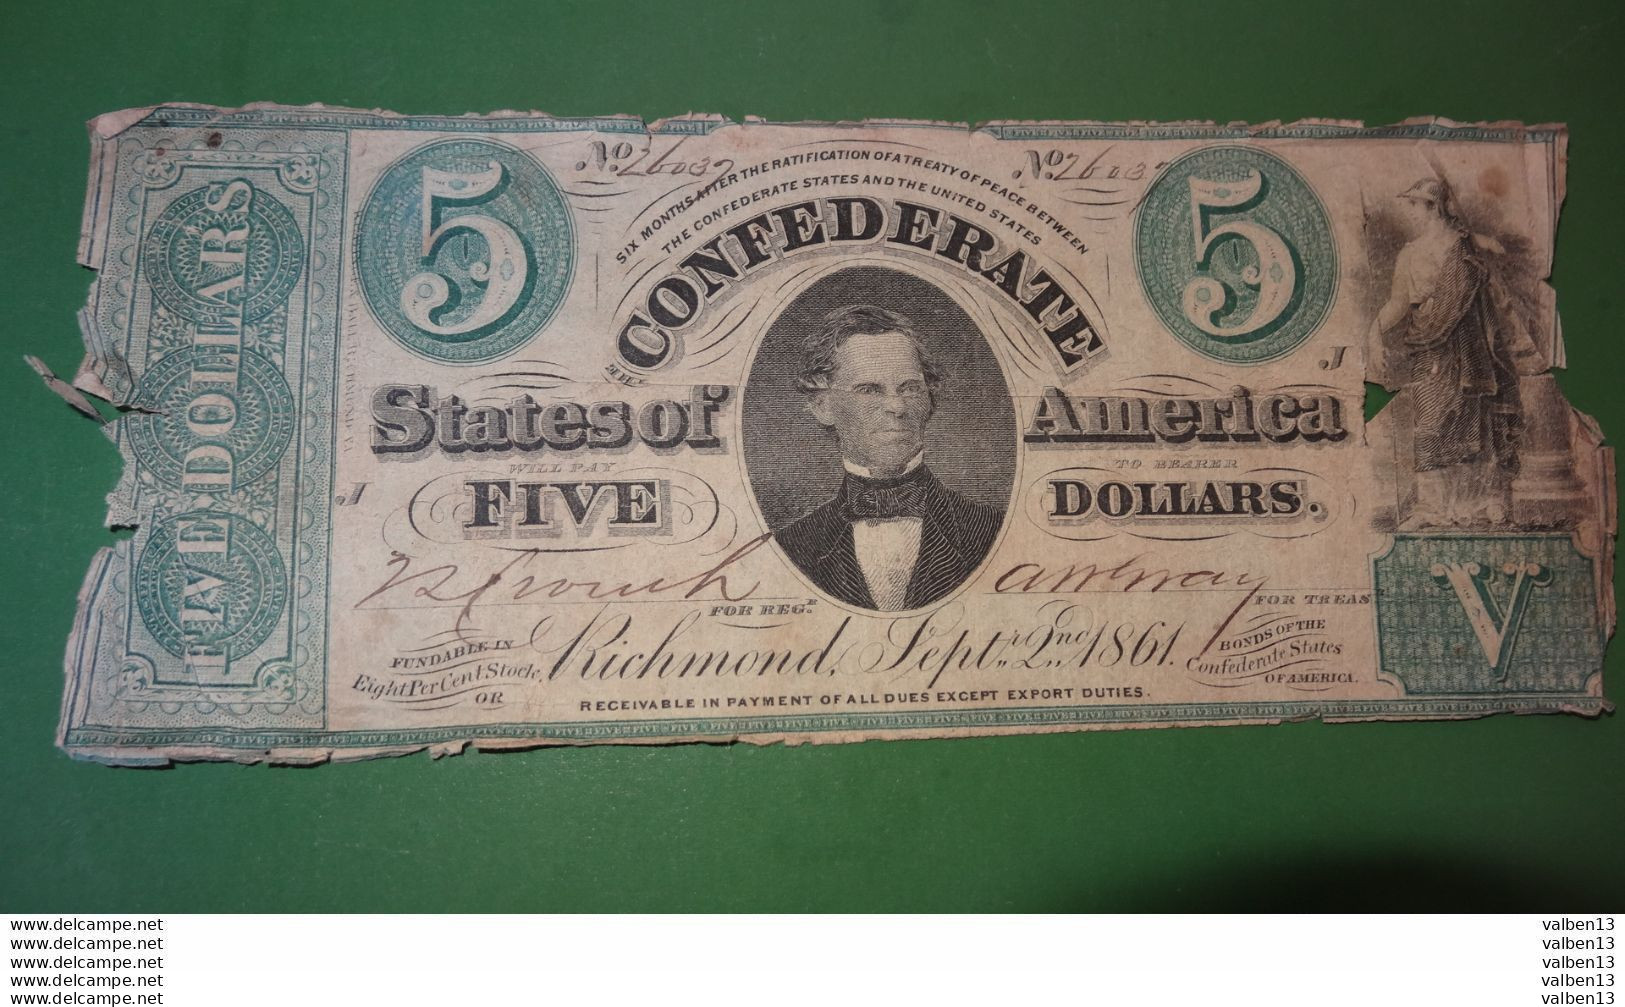 ETATS UNIS: Confederates States Of America. N° 26037, 5 Dollars. Date 02/09/1861 ........ Env.2 - Confederate (1861-1864)